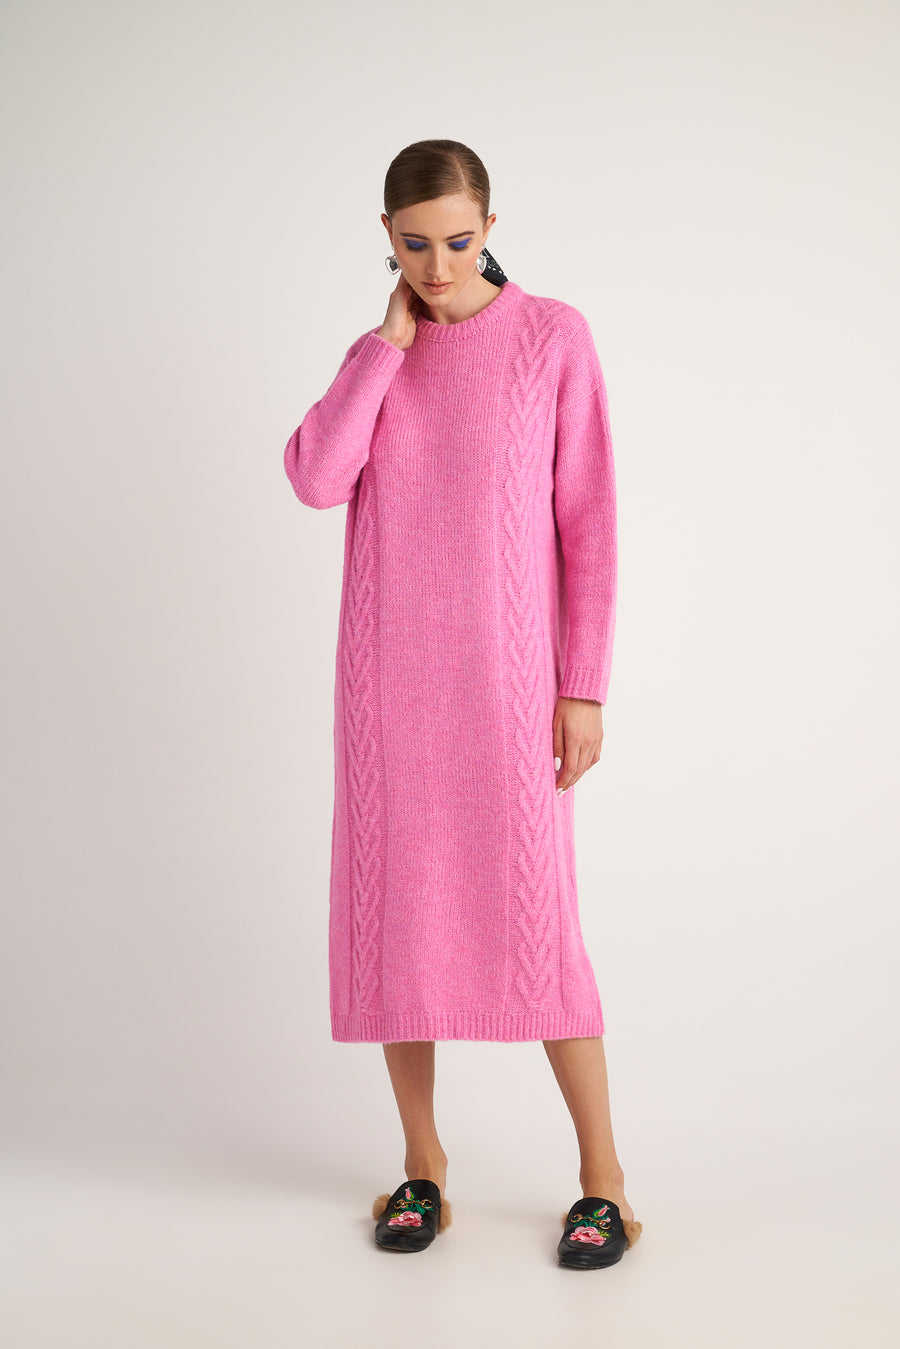 Reese Dress (Pink)